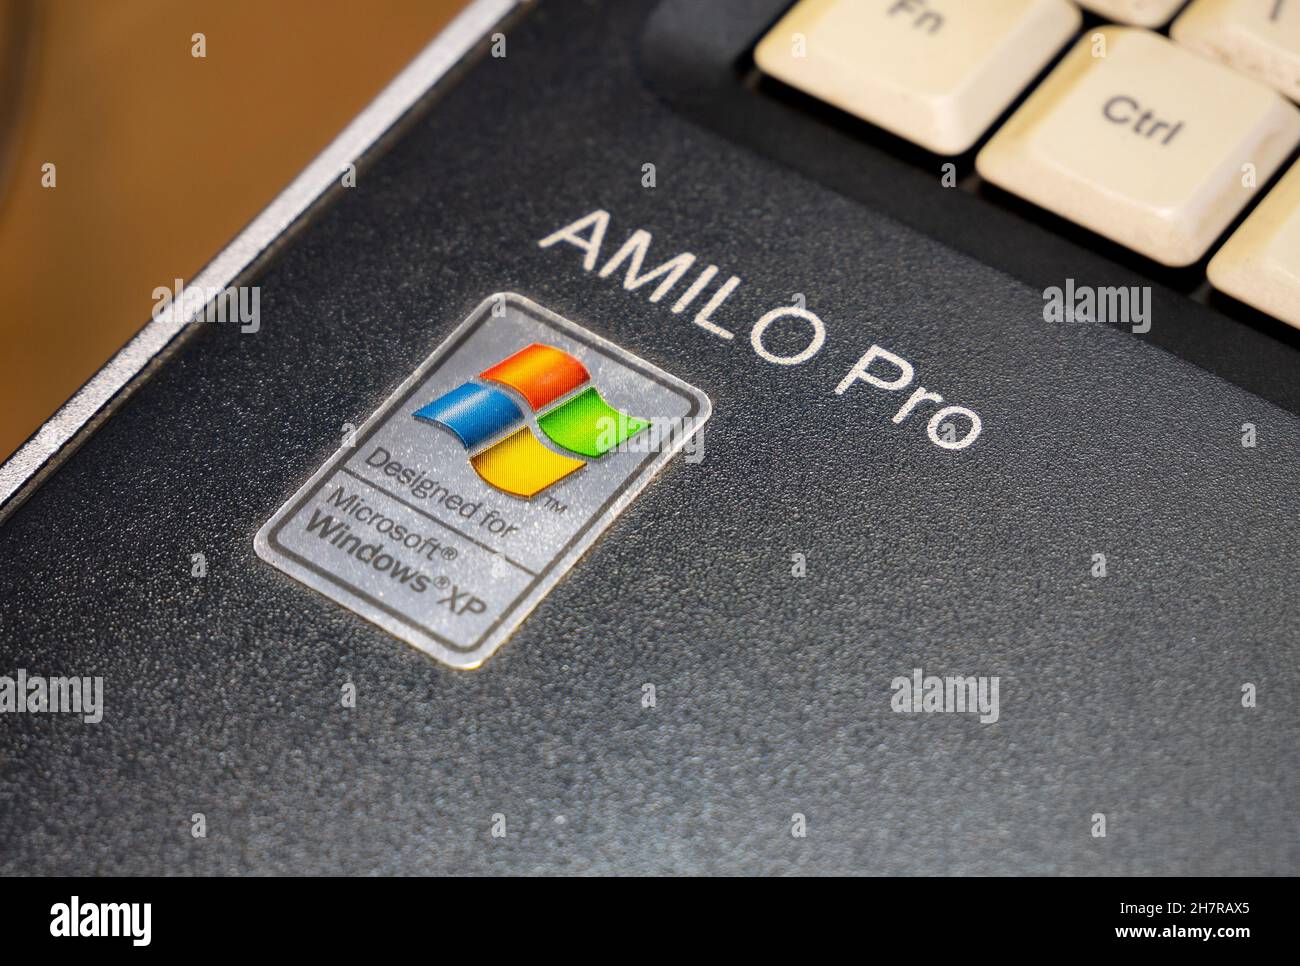 Entwickelt für Microsoft Windows XP, Amilo Pro Laptop, altes Netbook  veralteten Betriebssystem Aufkleber, Retro-Computing-Konzept. Nahaufnahme  der Objektdetails Stockfotografie - Alamy